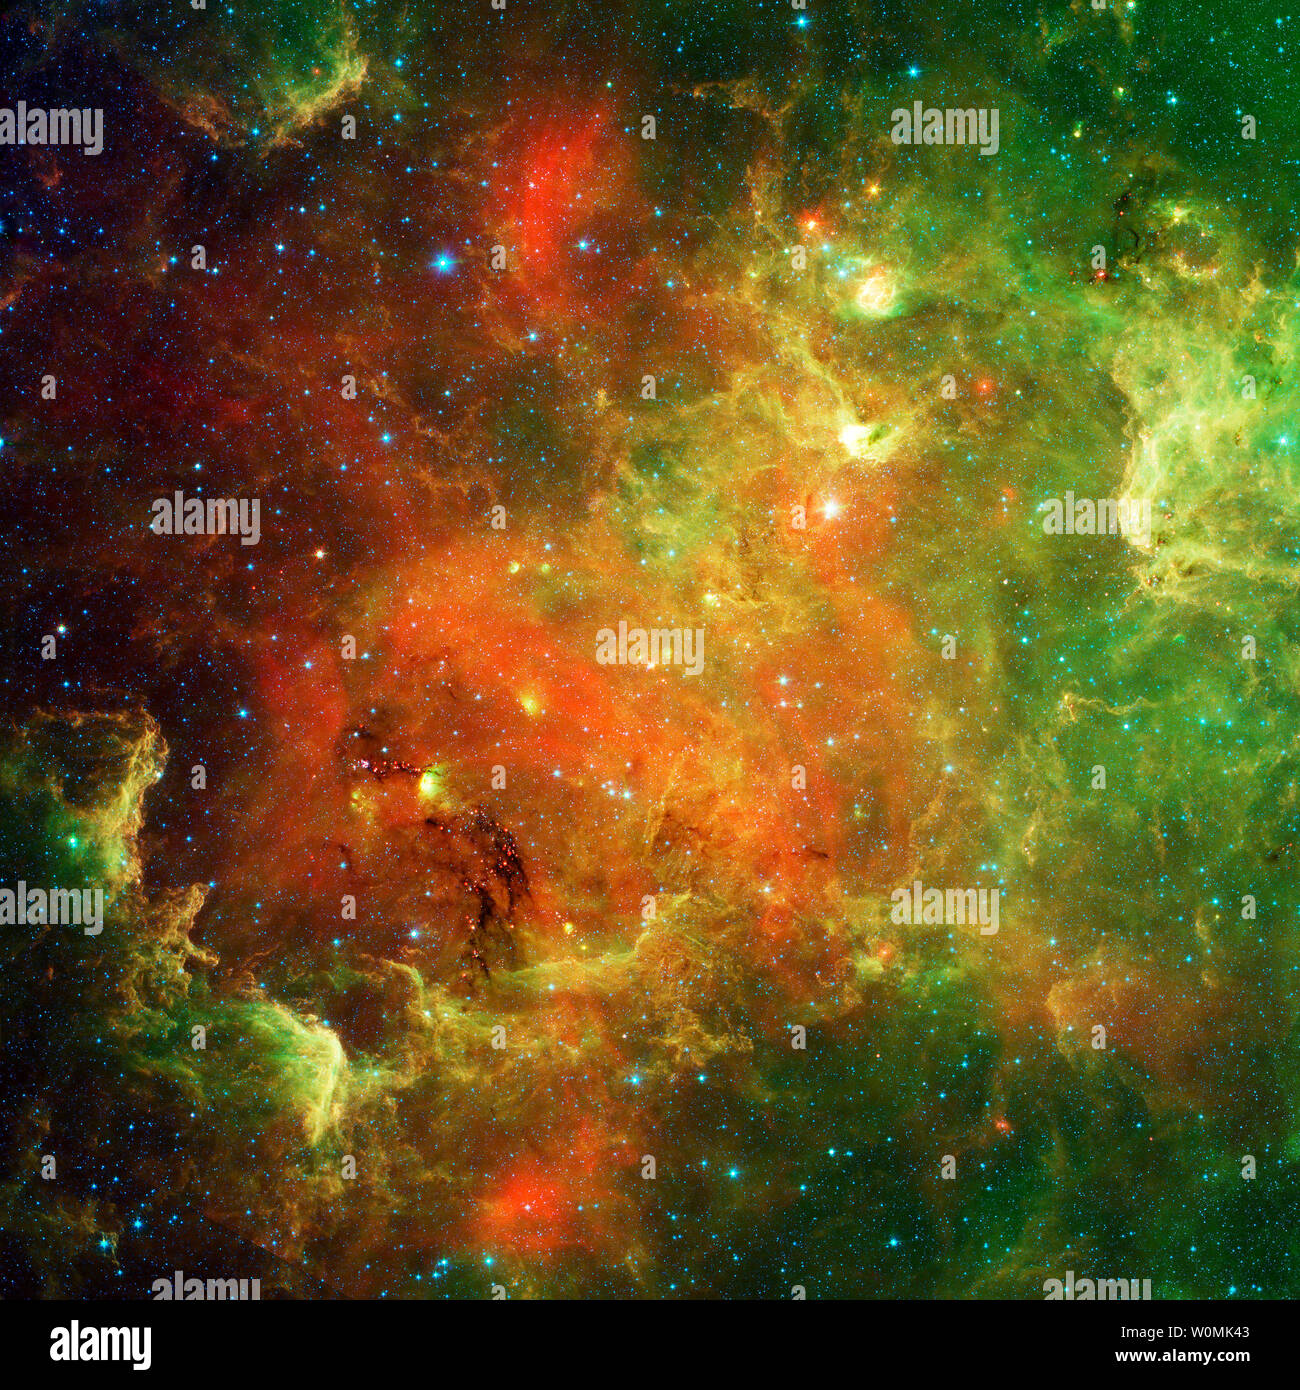 Der Nordamerika-nebel in einem Infrarot Ansicht von NASA's Spitzer Space Telescope im Februar 2011 gesehen. Im sichtbaren Licht der Region Nordamerika ähnelt aber in diesem Bild, um es in Teil verschwindet, weil Infrarotlicht dringt Staub in der Erwägung, dass das sichtbare Licht nicht. Cluster von jungen Sternen (ca. eine Million Jahre alt) kann im gesamten Bild gefunden werden. UPI/NASA/JPL-Caltech Stockfoto